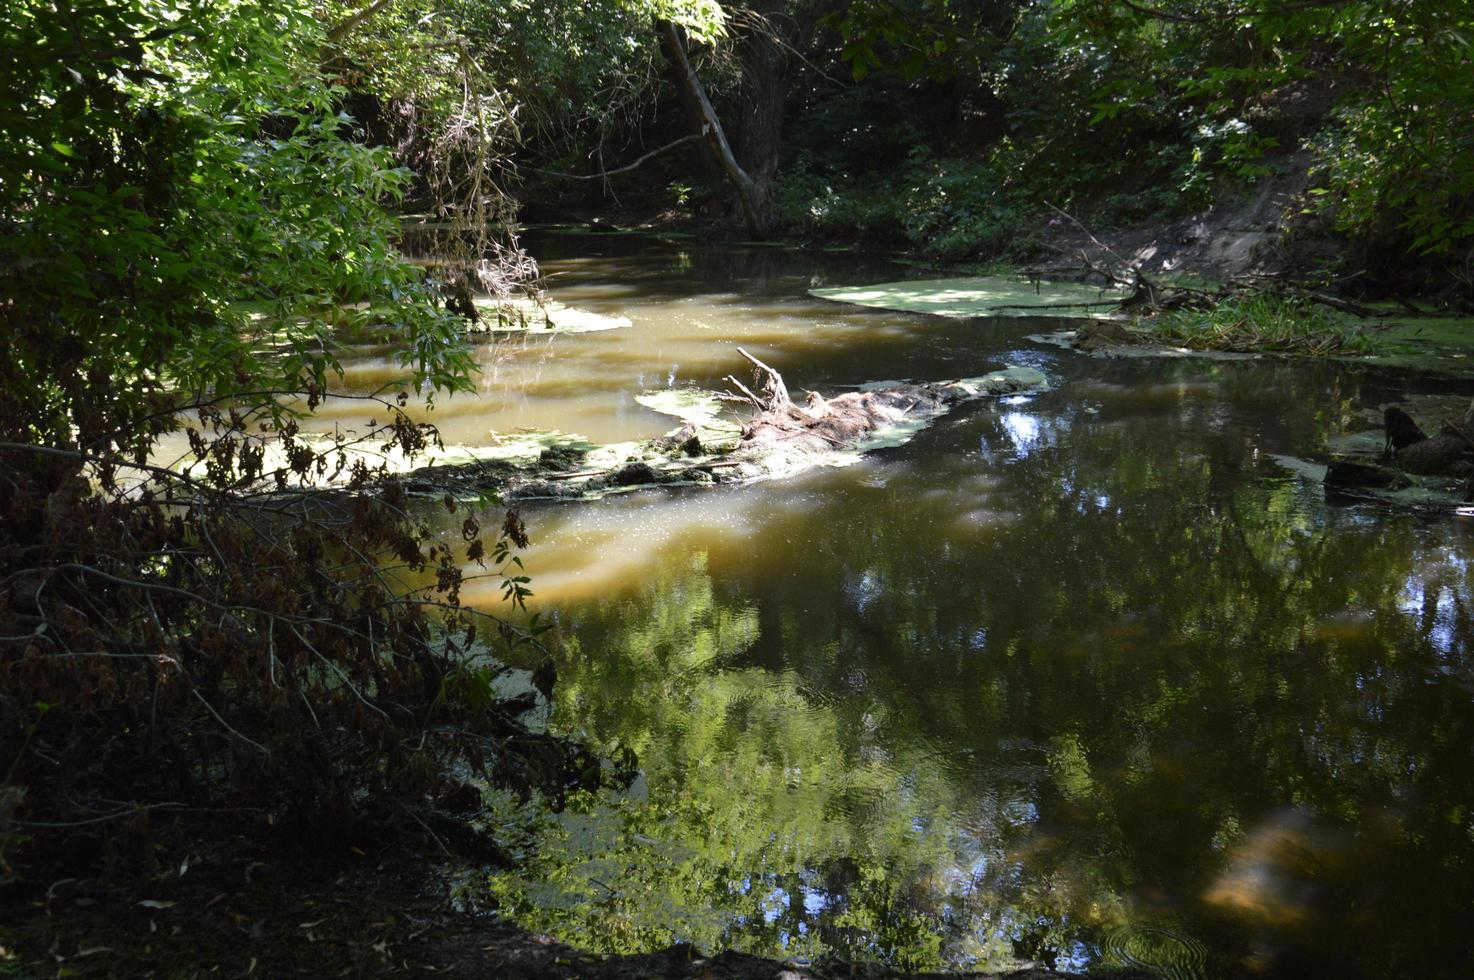 une petite rivière coule envahie de roseaux et bloquée par un barrage photo